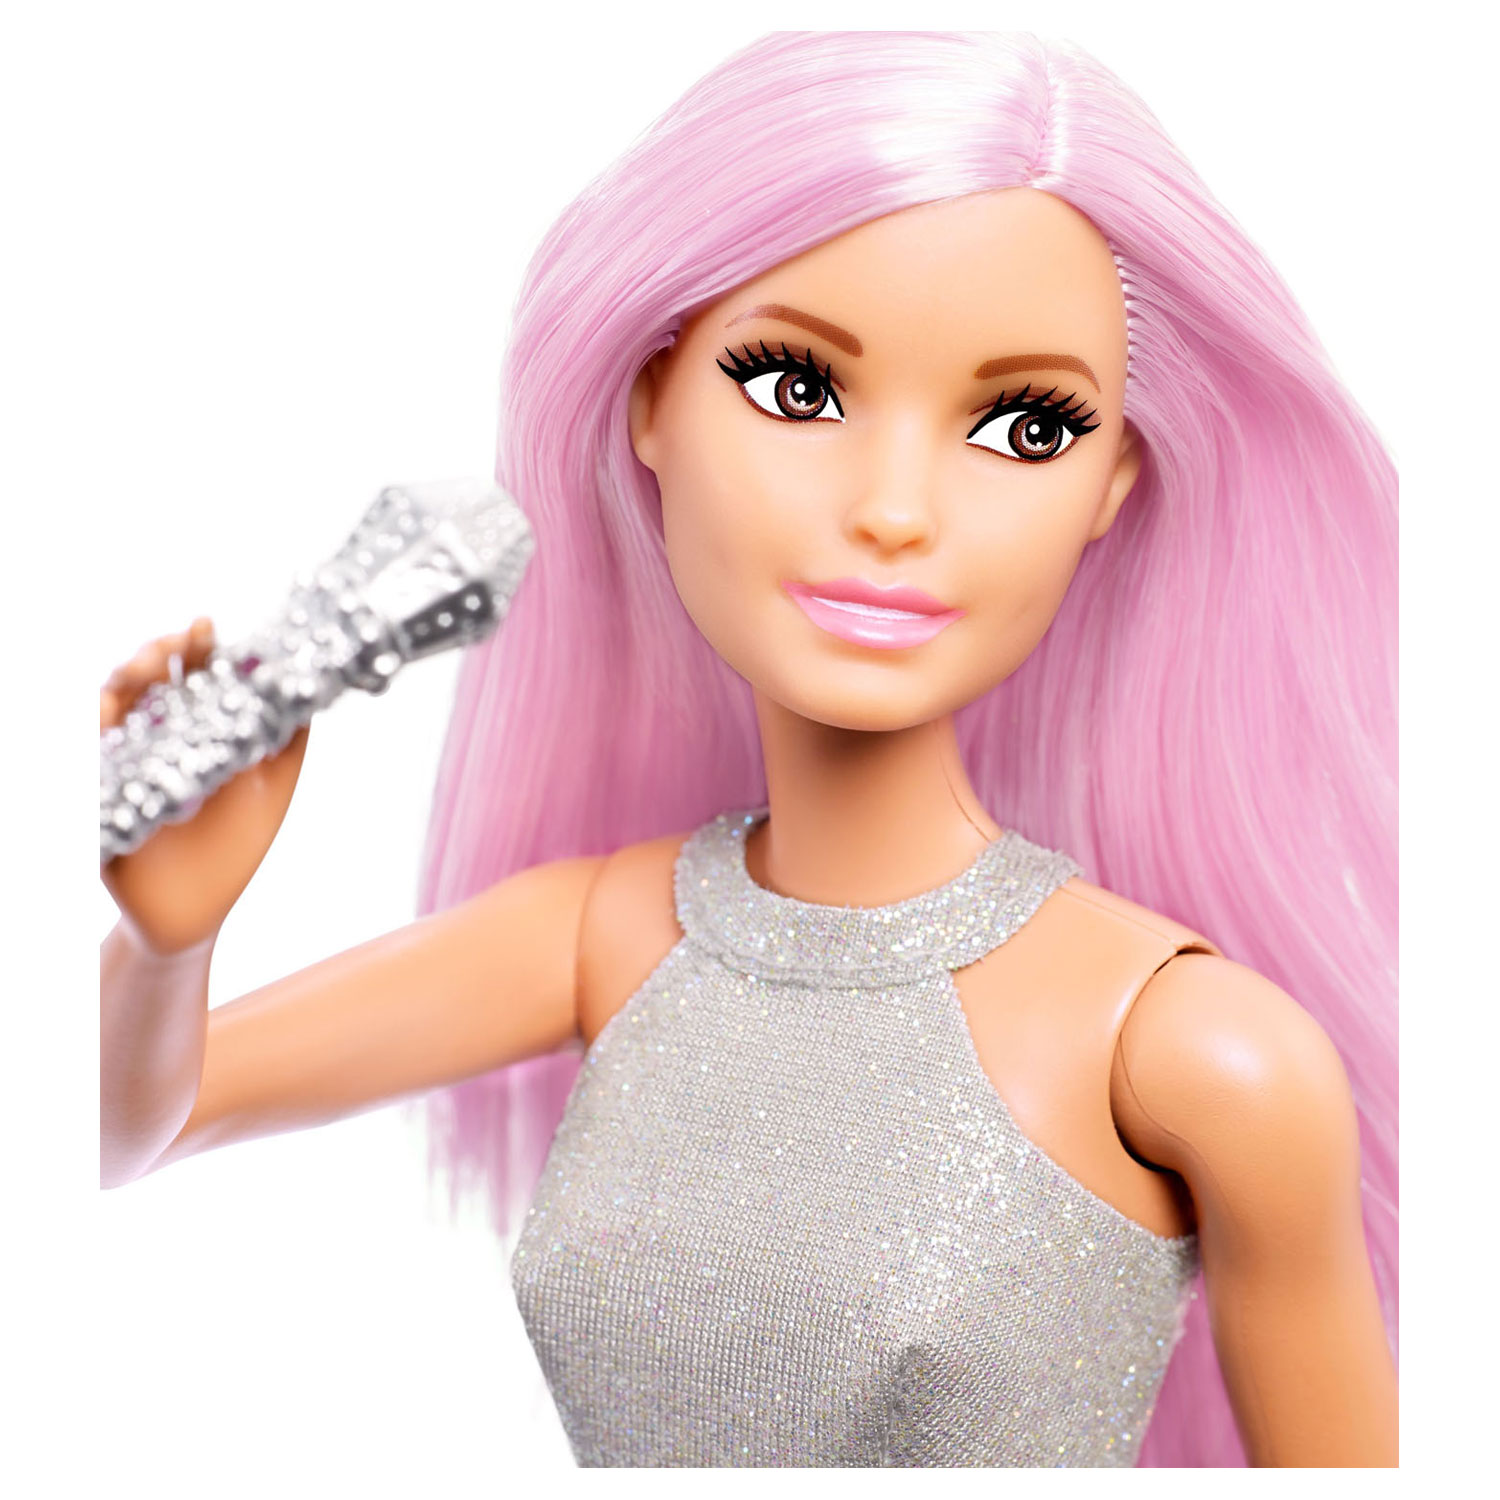 Barbie Popster